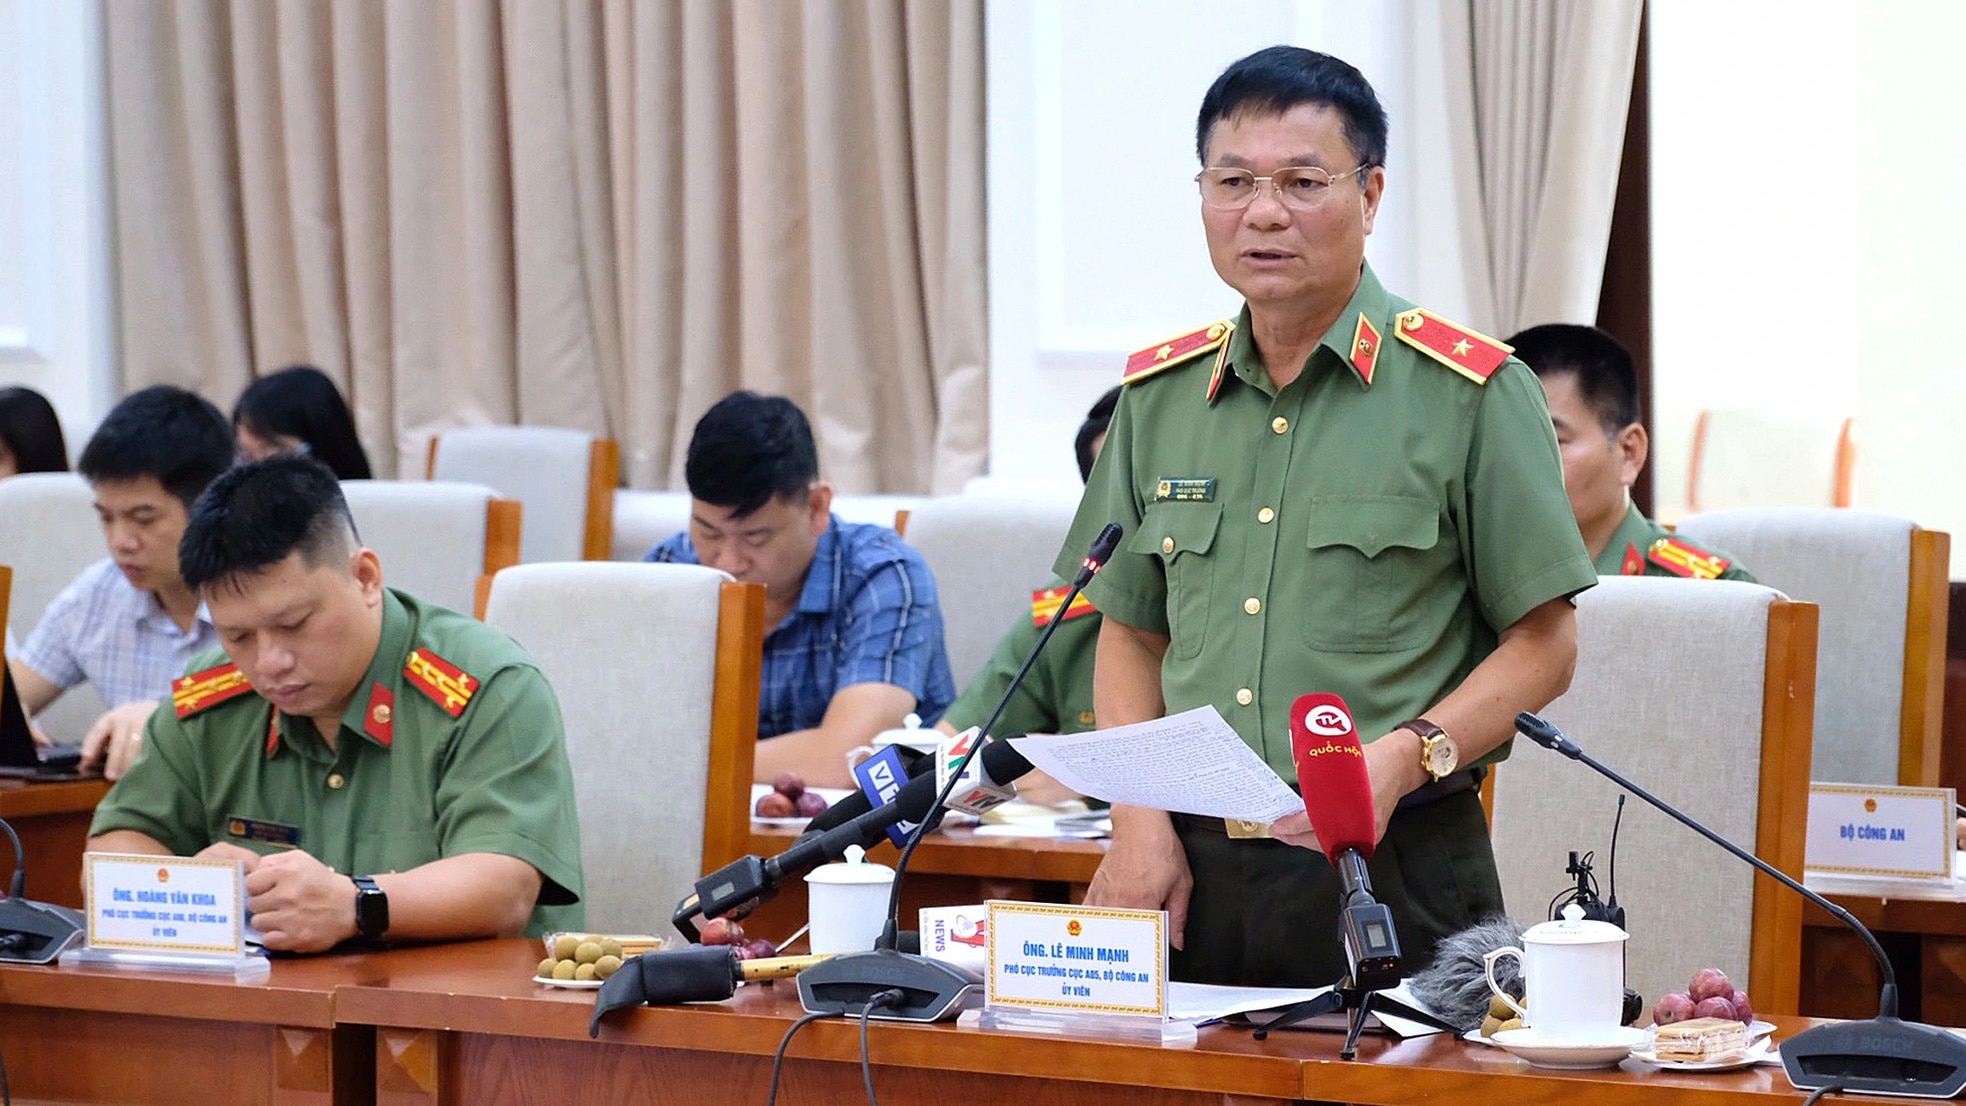 Thiếu tướng Lê Minh Mạnh - phó cục trưởng Cục A05, Bộ Công an - trao đổi tại hội nghị trực tuyến - Ảnh: NGUYÊN BẢO